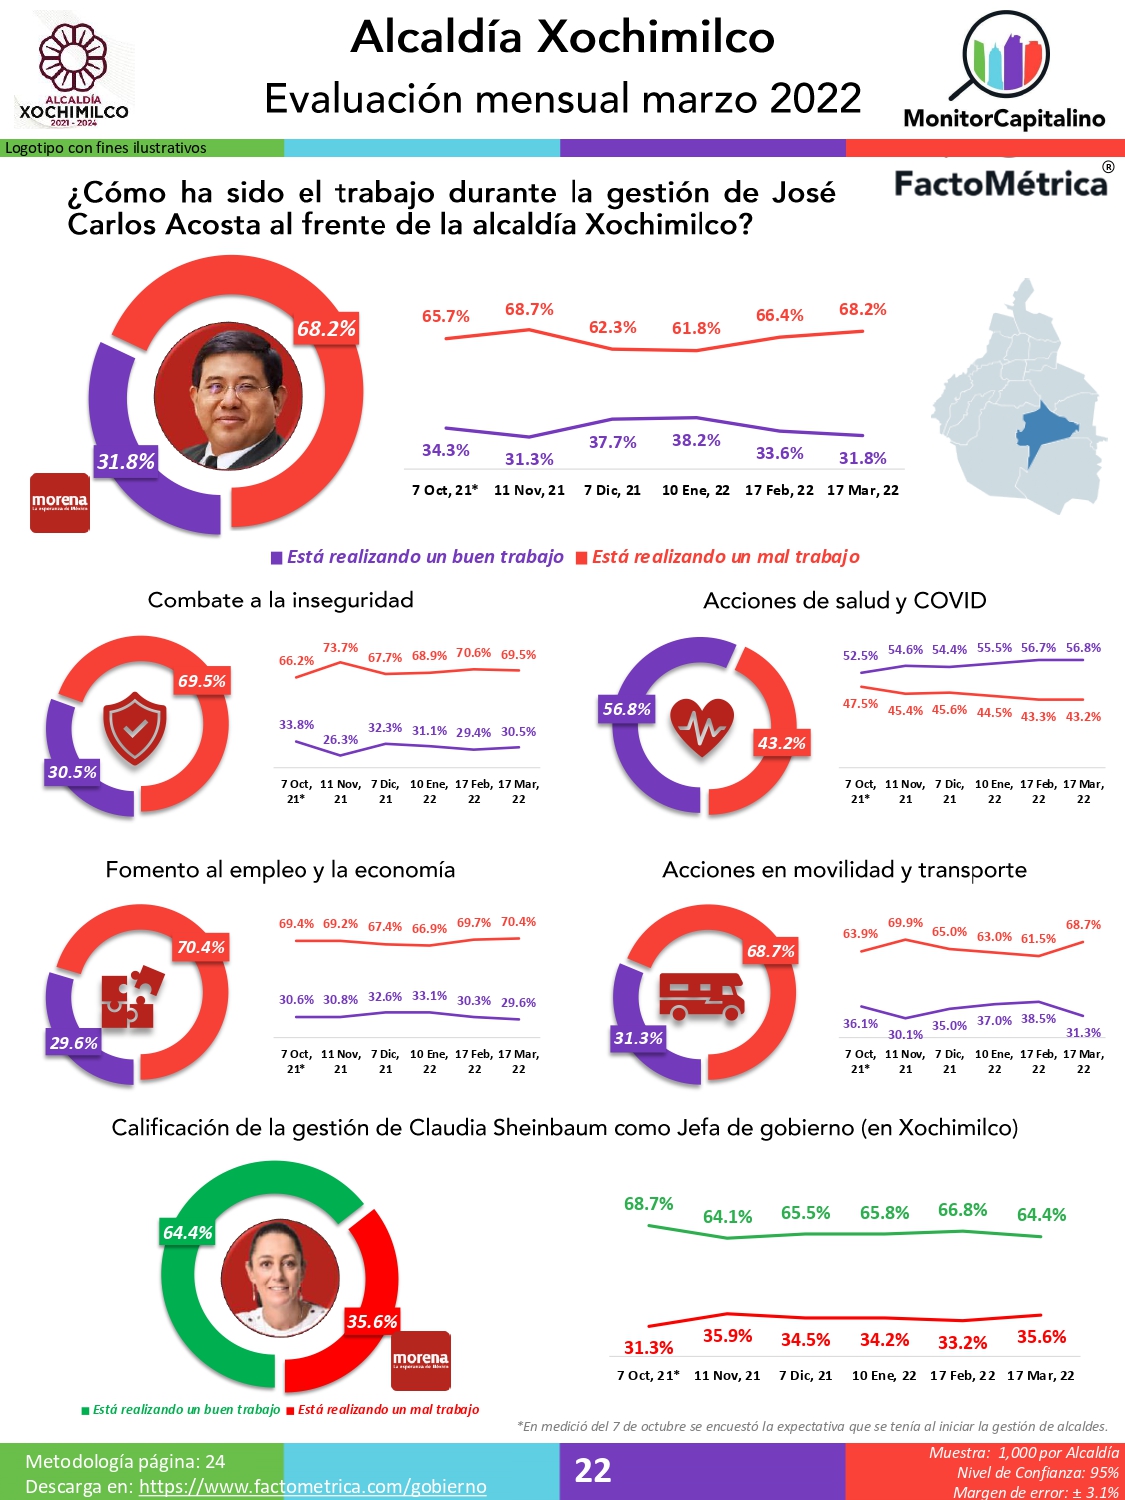 Judith Venegas (Milpa Alta), José Carlos Acosta (Xochimilco) y Margarita Saldaña (Azcapotzalco), los alcaldes PEOR calificados en la Ciudad de México: Factométrica